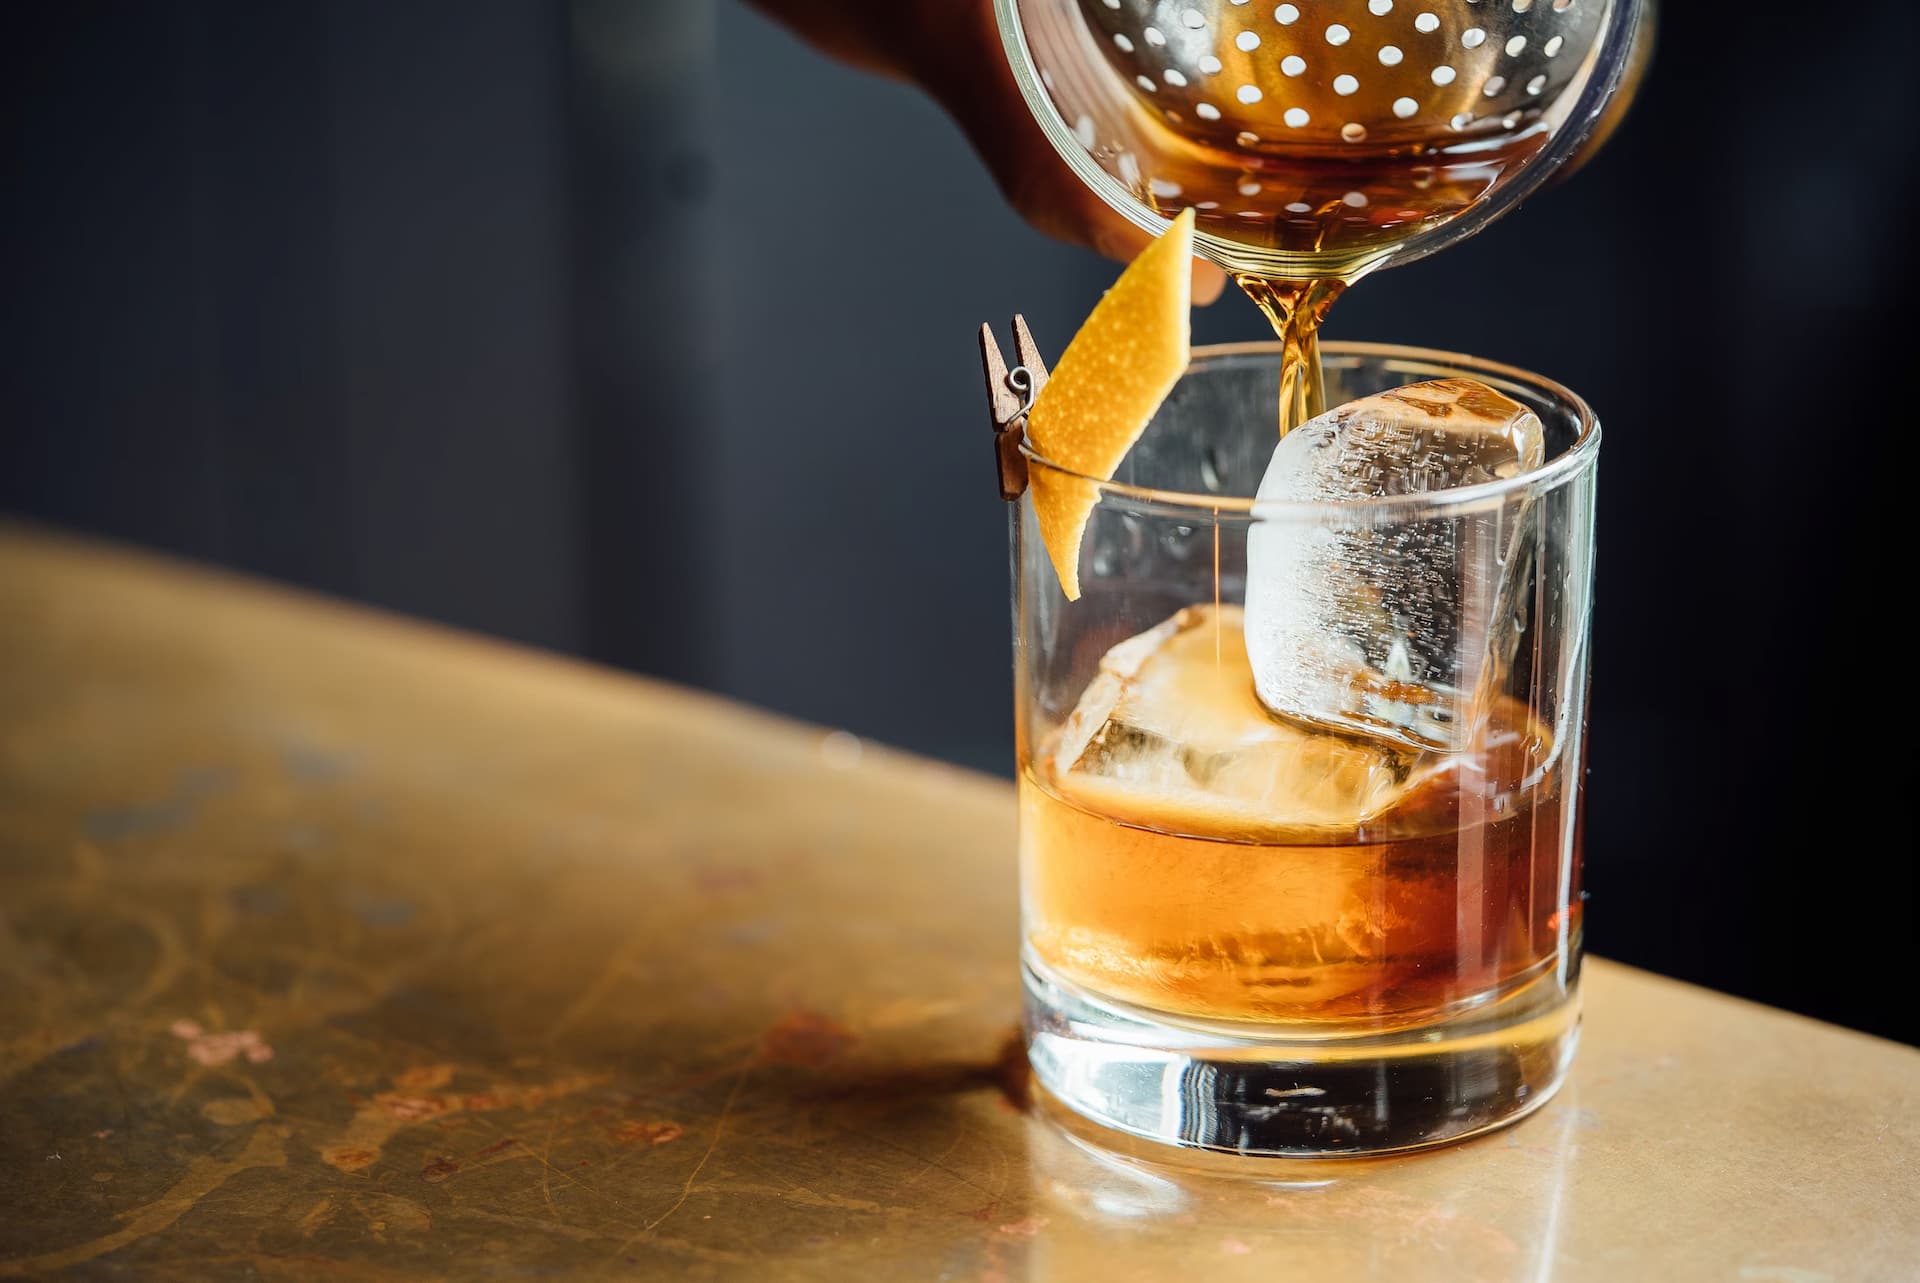 whisky tasting tips for beginners